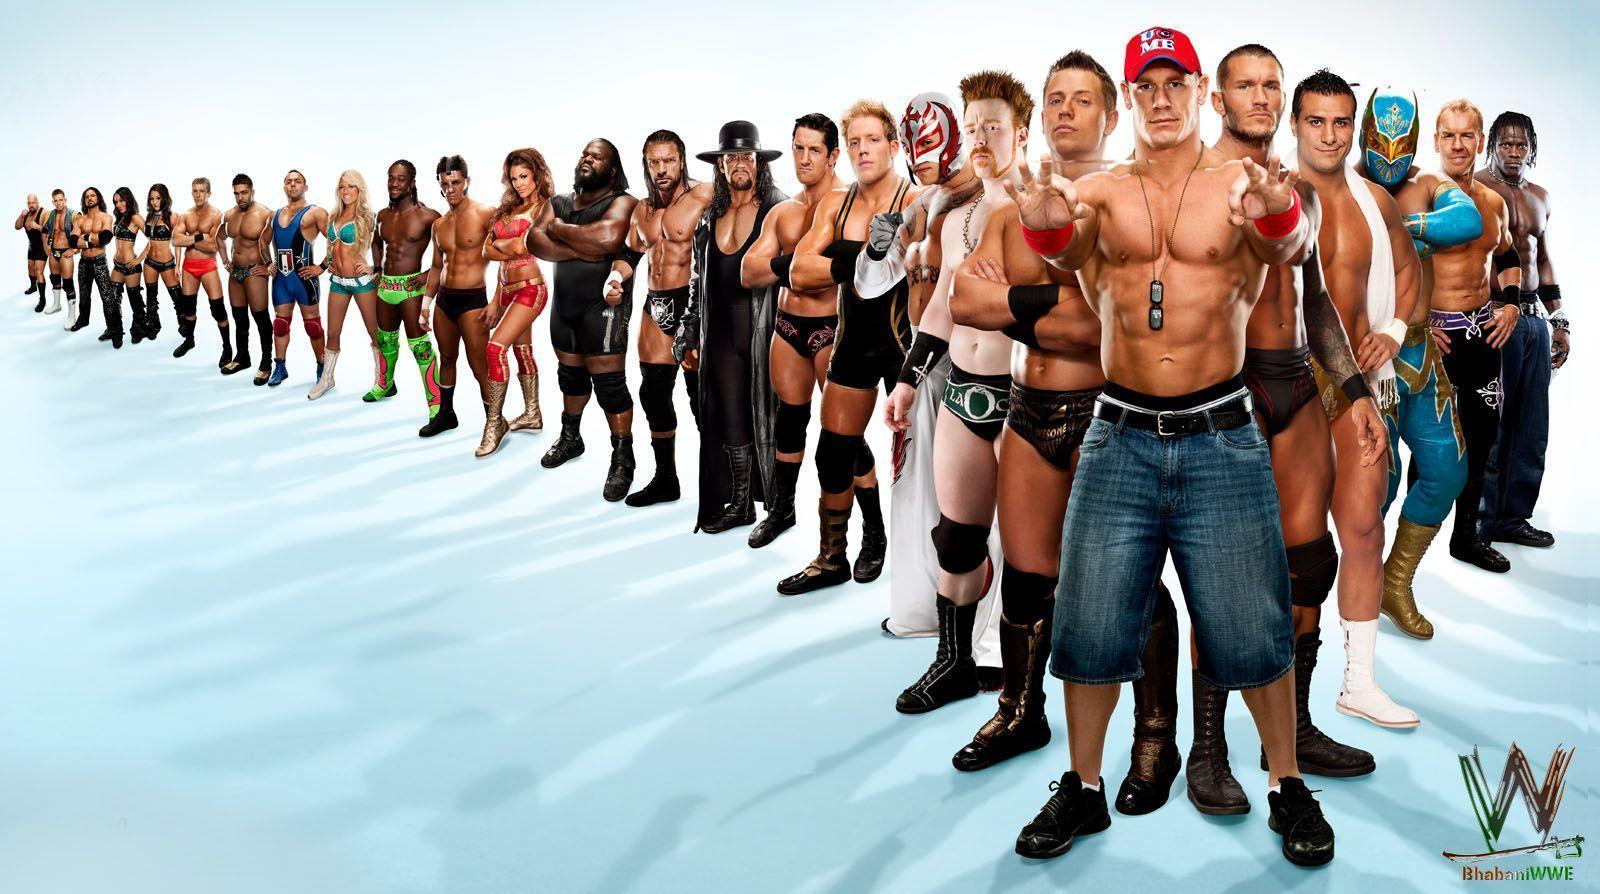 WWE Wrestling Wallpaper